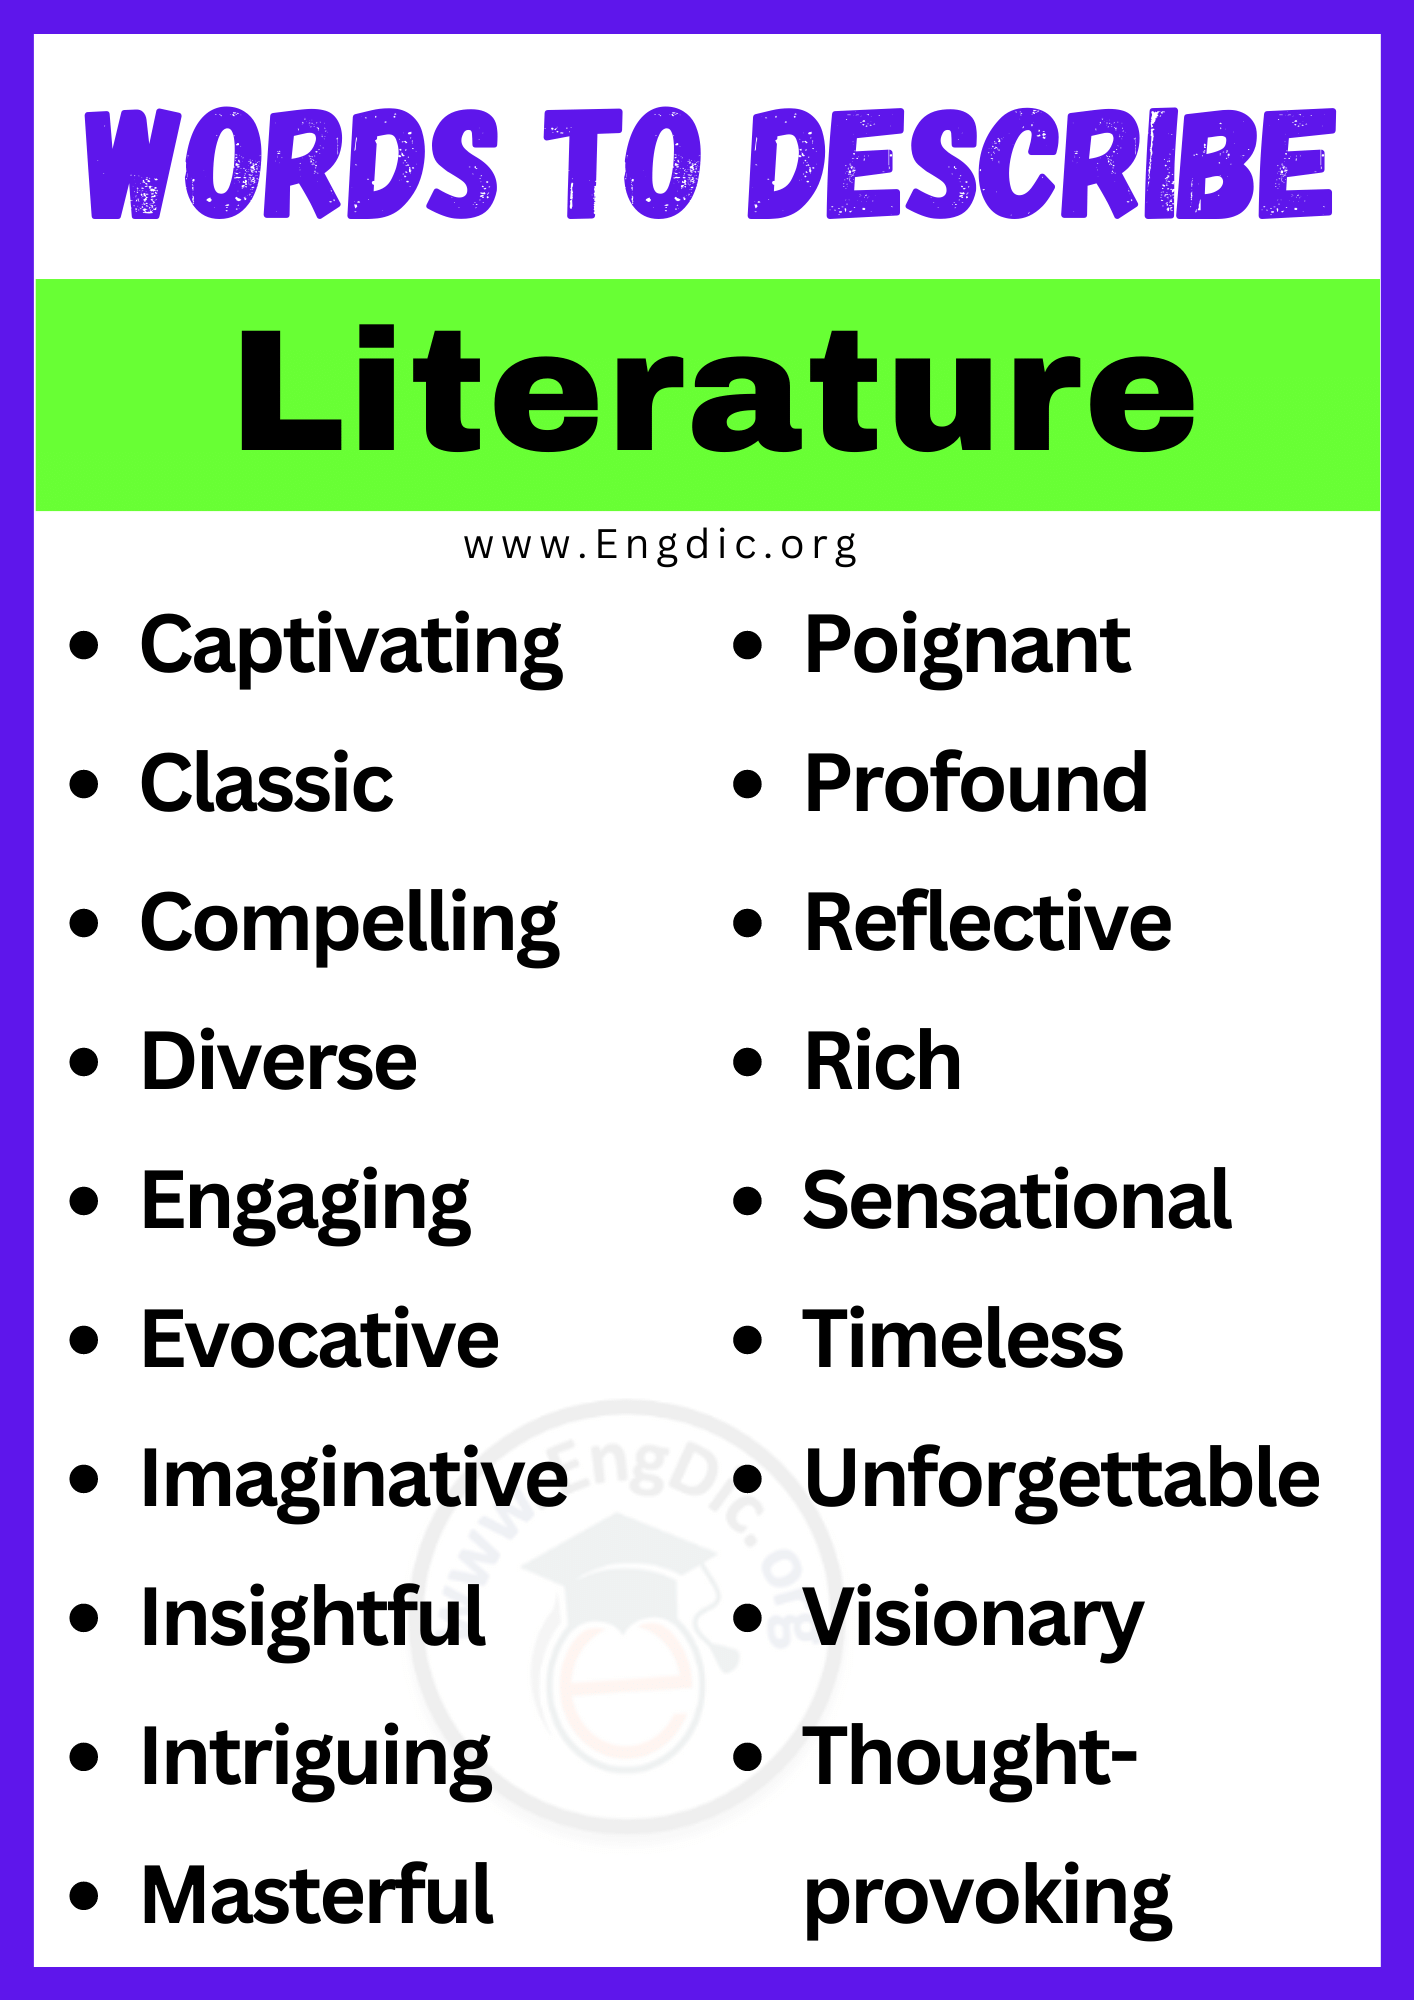 Words to Describe Literature